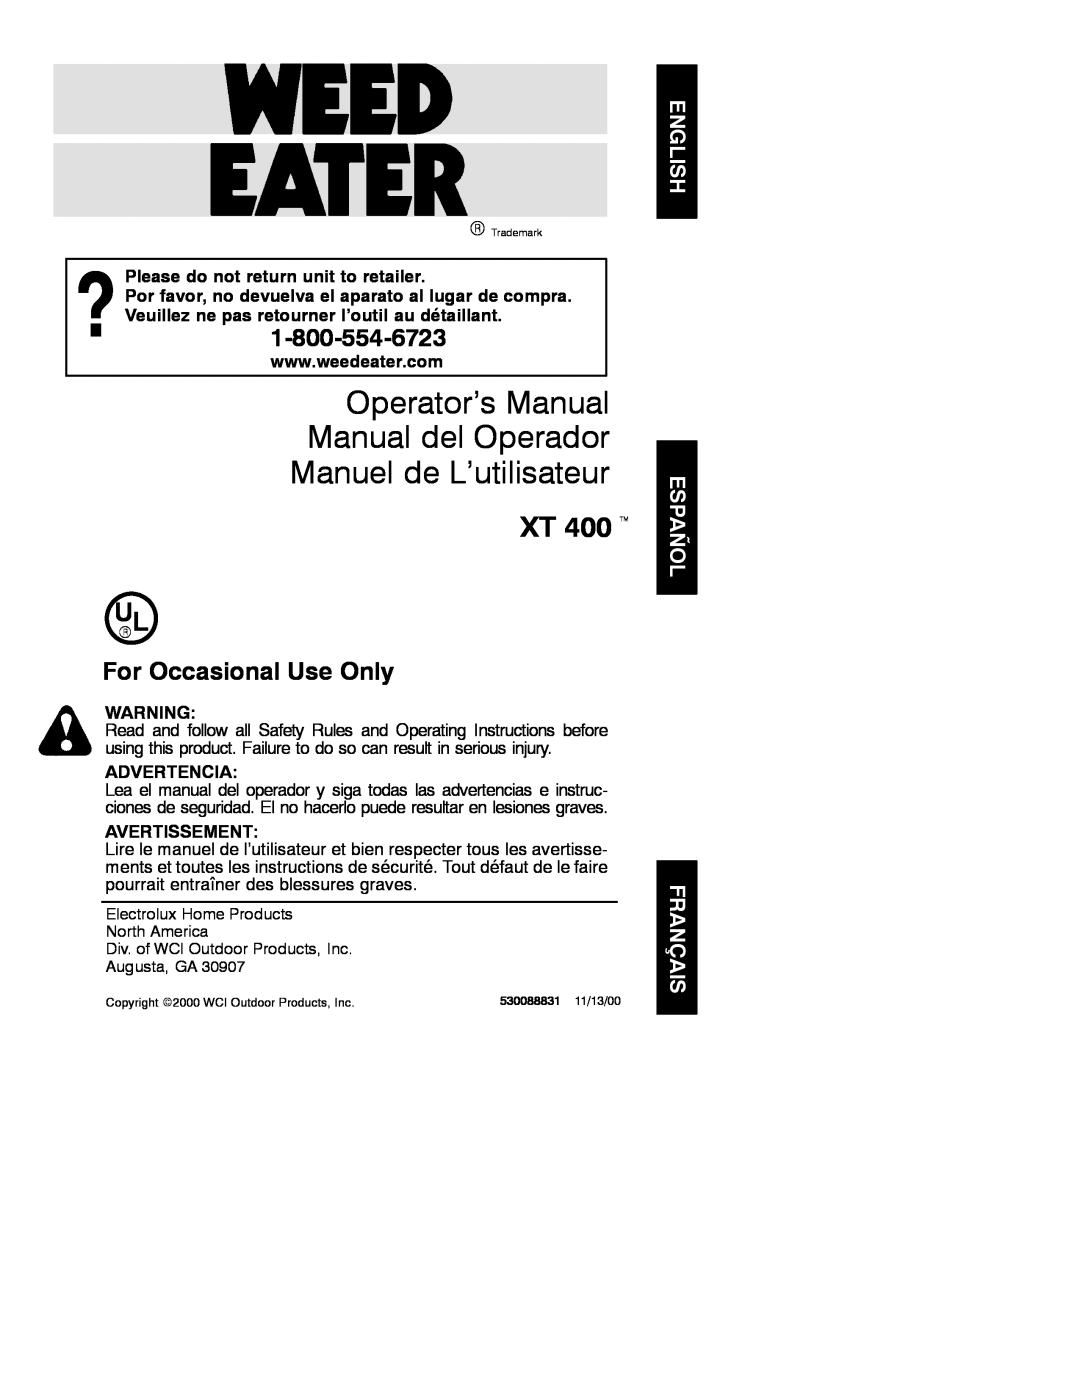 Weed Eater 530088831 manual Operator’s Manual Manual del Operador, Manuel de L’utilisateur, XT 400 t, Advertencia 